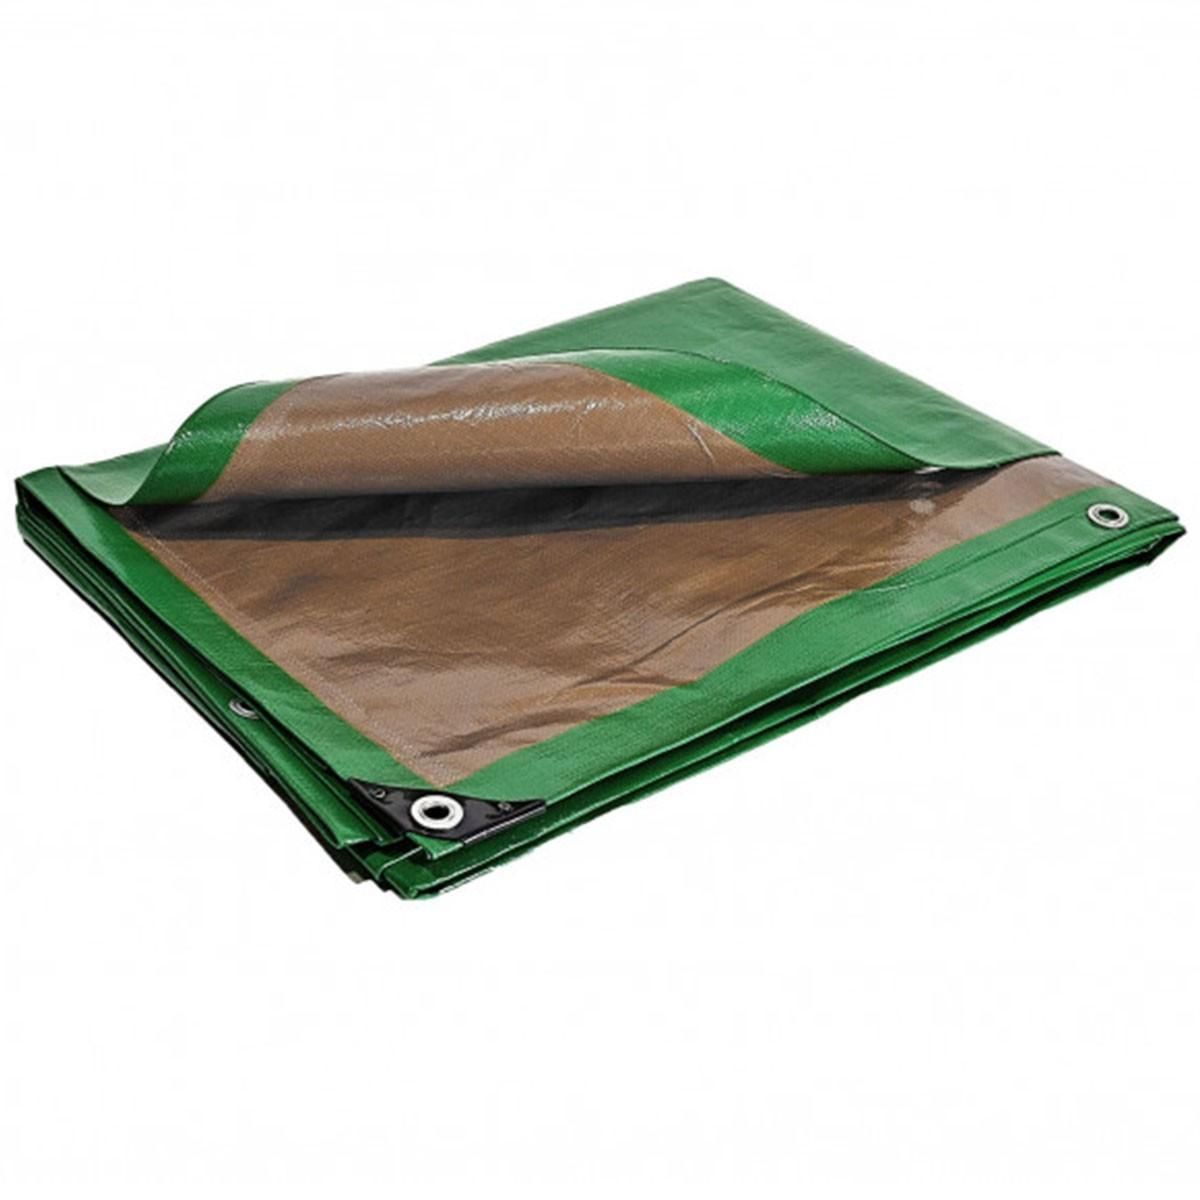 Tecplast Bâche pergola 3 x 5 m Toile pour tonnelle 250g/m2 Traitée anti UV verte et marron polyéthylène haute qualité